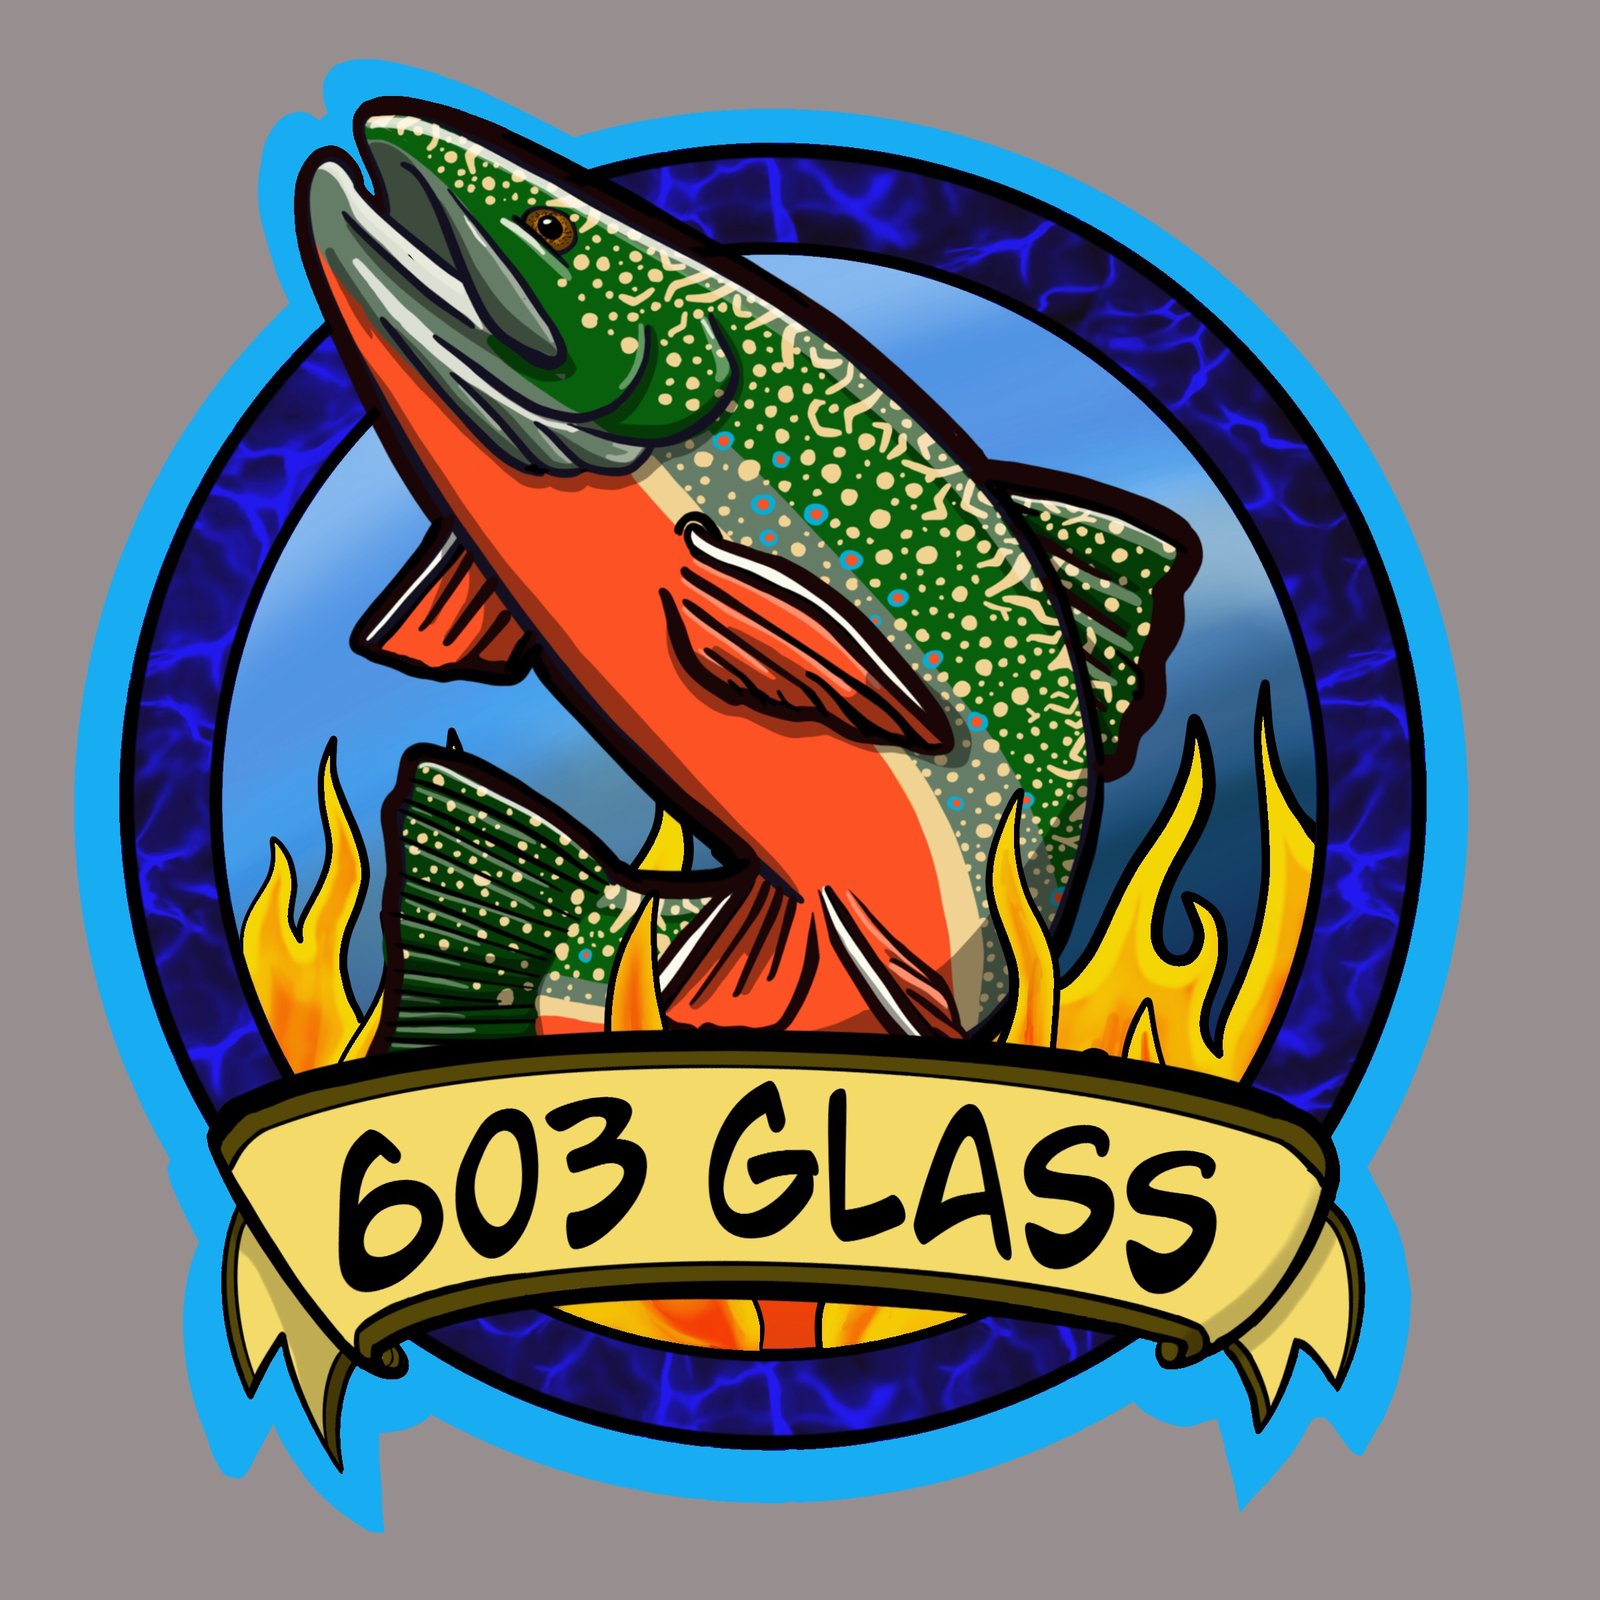 603Glass 